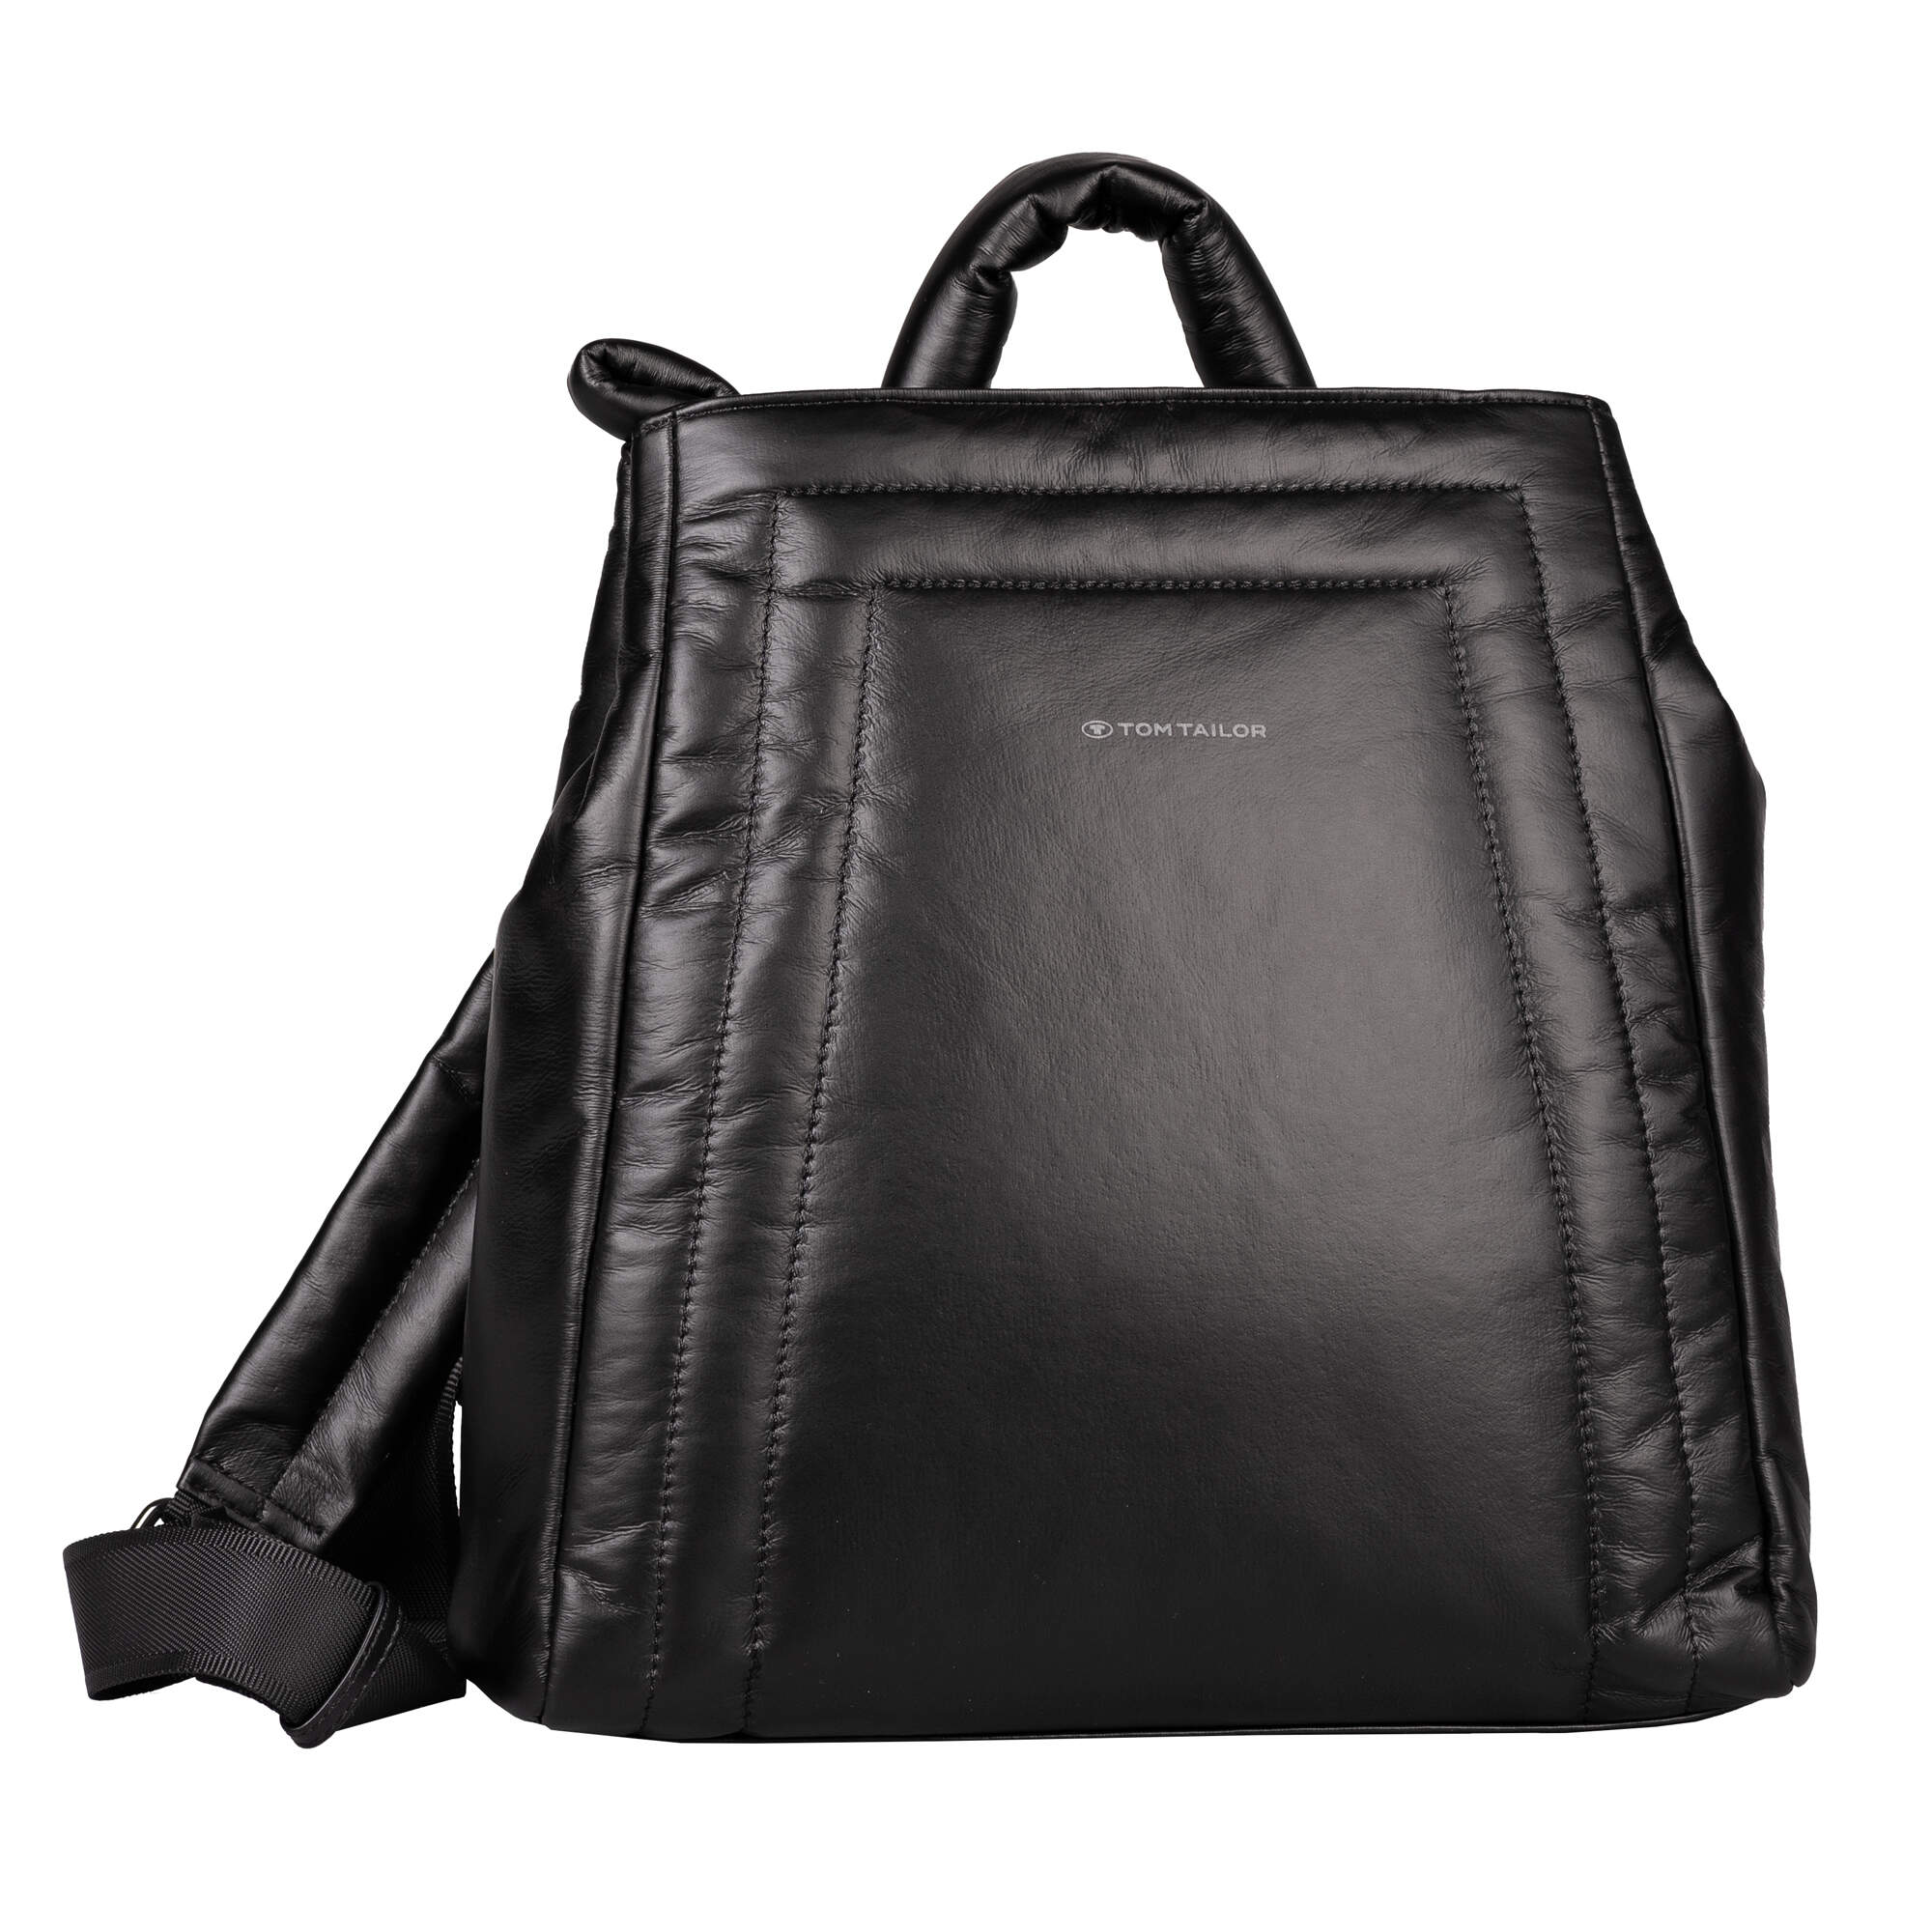 Leather Drawstring Bucket Bag, White and Taupe Shoulder Bag Purse, Vintage Tom  Tailor Bag - Etsy Israel